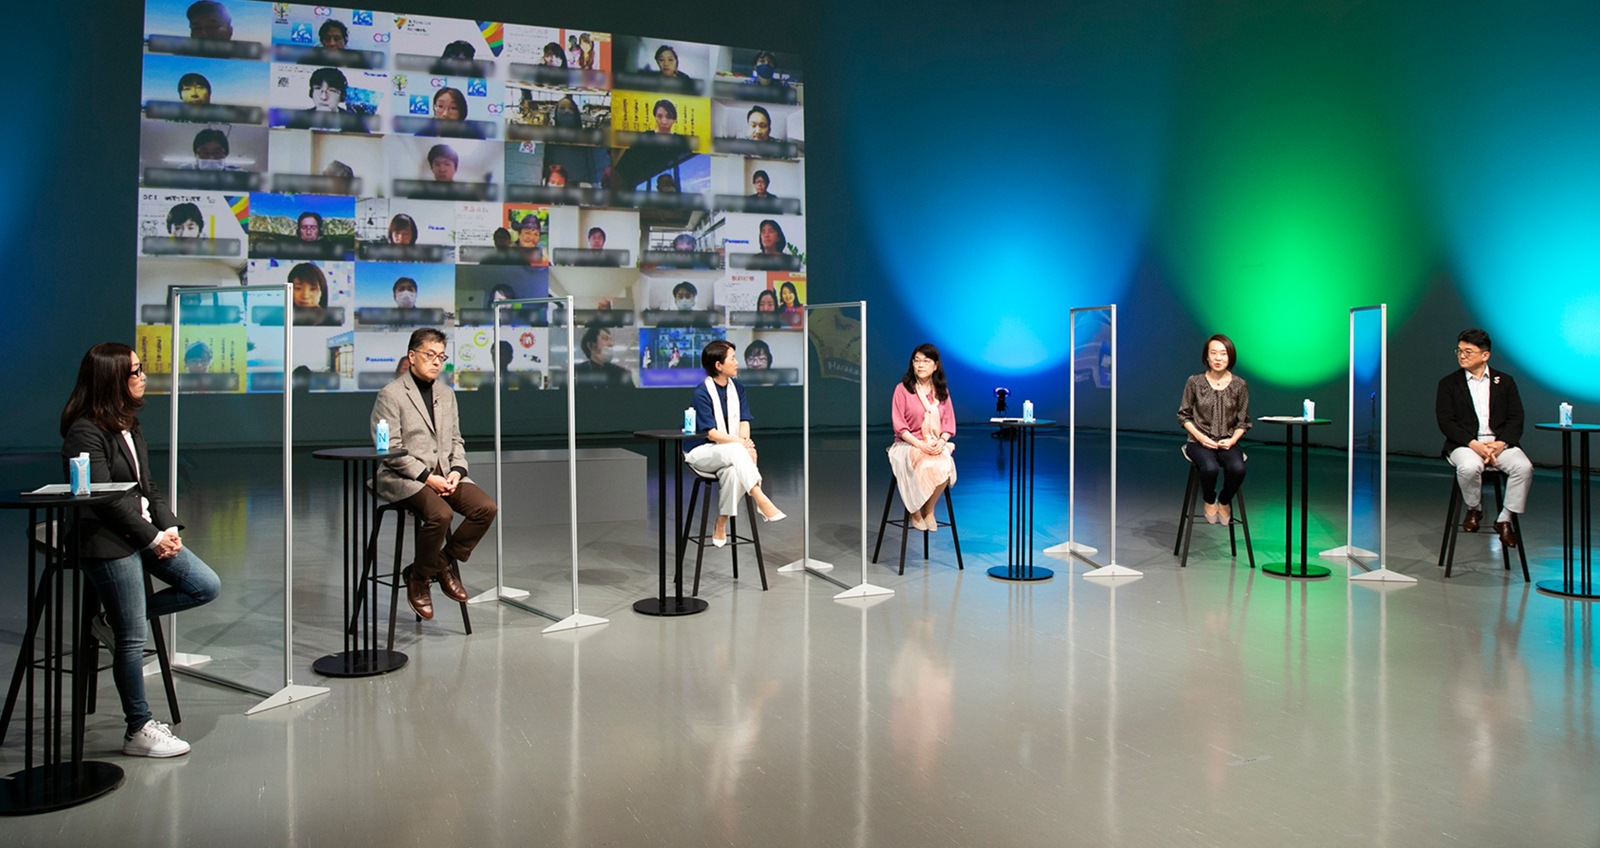 写真：「グループDEIフォーラム 2021」の様子。スタジオに司会者と5人の登壇者が着席し、背景にある大きなスクリーンにオンライン参加の社員の顔が複数並んでいる。